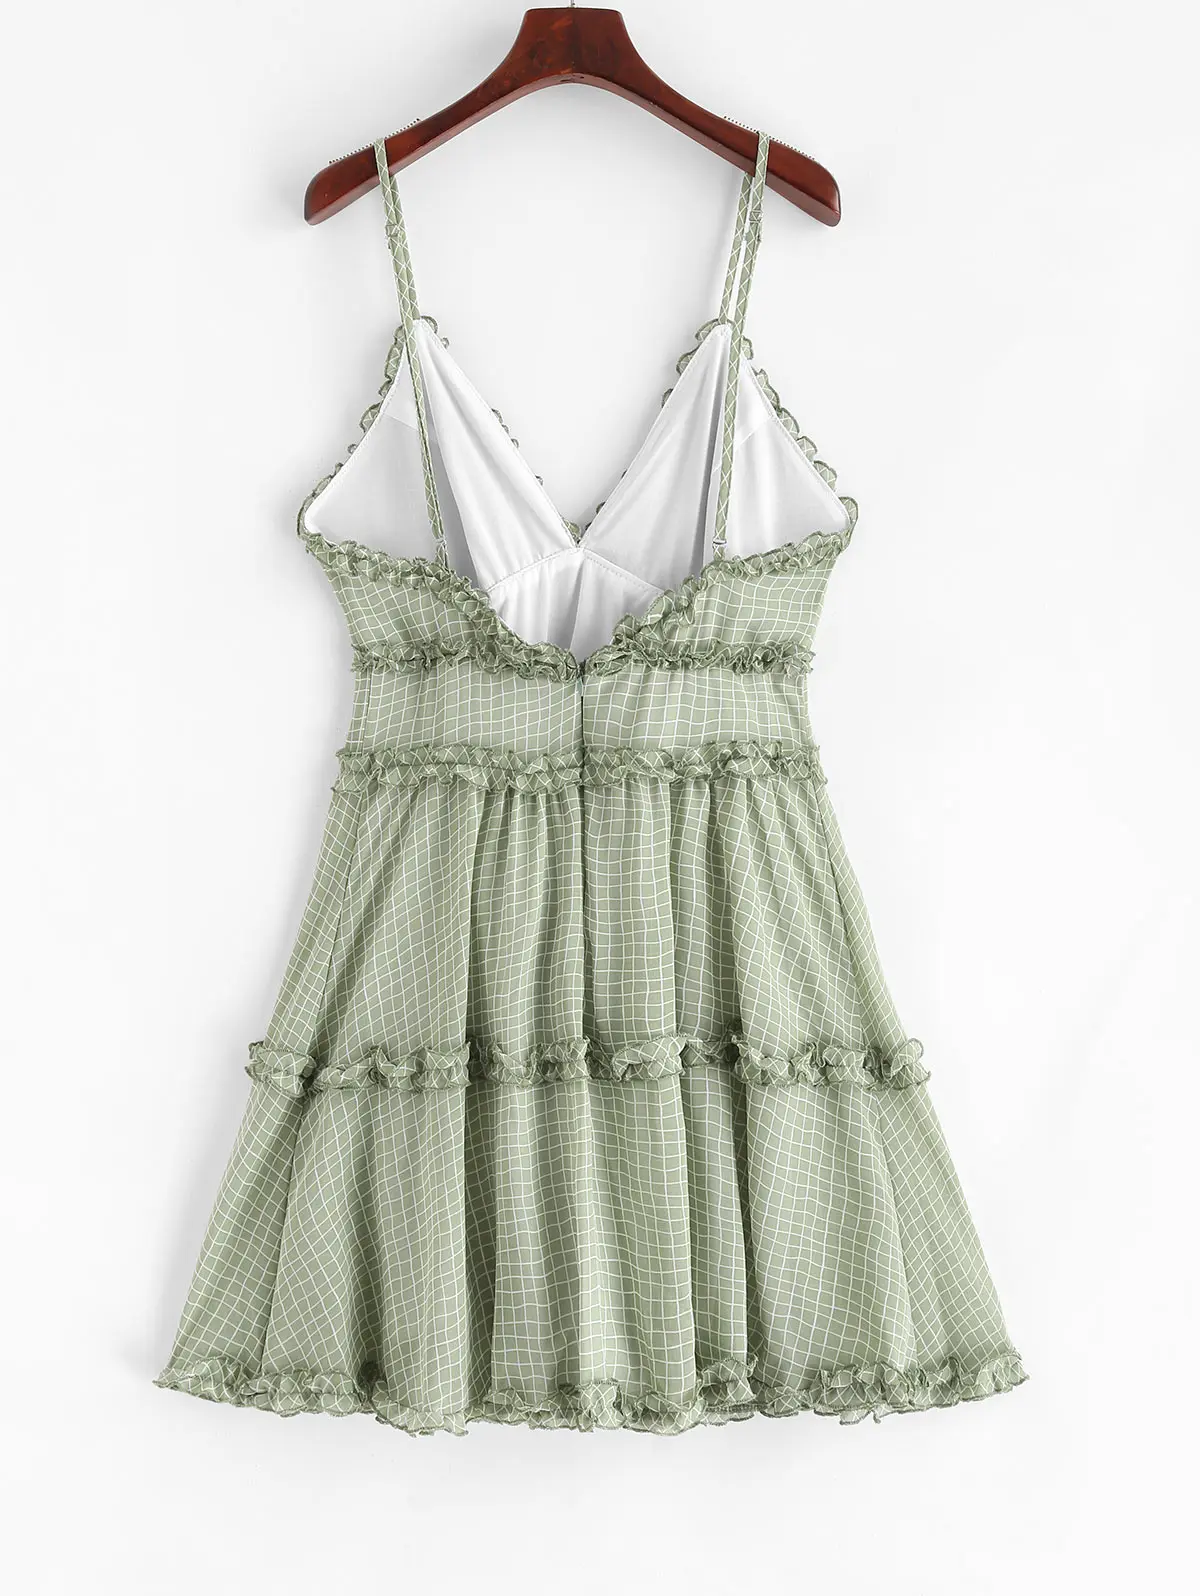 ZAFUL платье с оборками и отделкой в мелкую клетку, тонкое цветочное мини платье на бретельках трапециевидной формы с оборками без рукавов, женское Повседневное платье в мелкую клетку